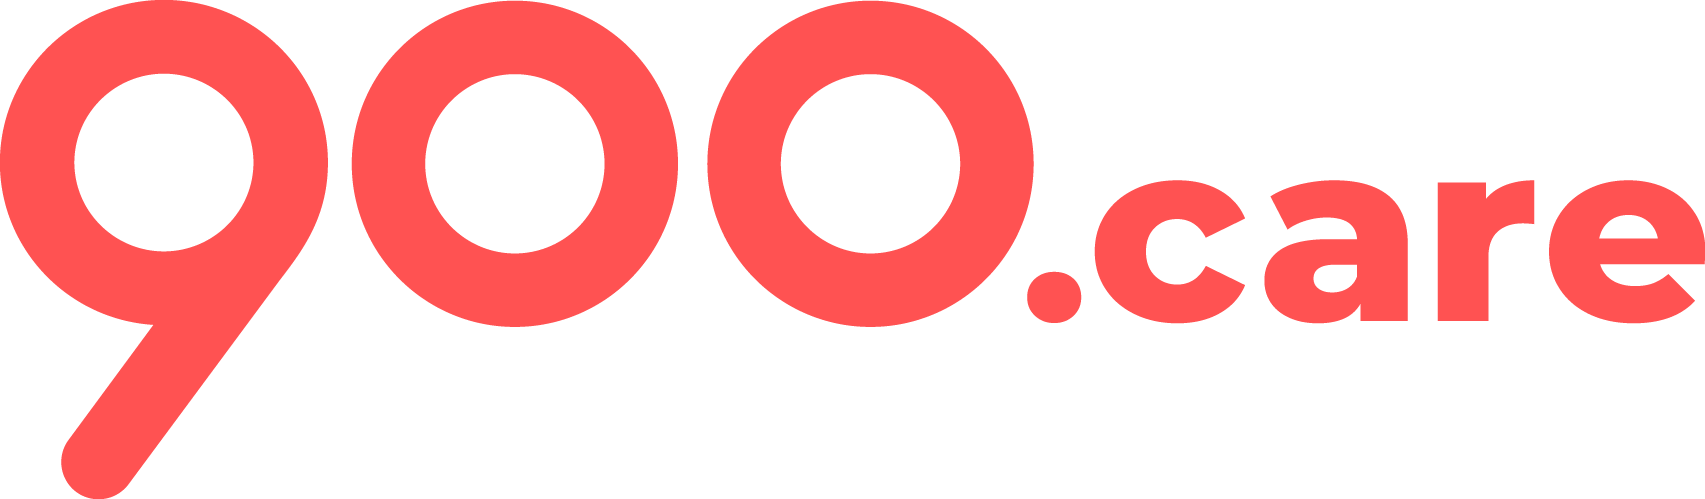 Logo 900 Long Red2